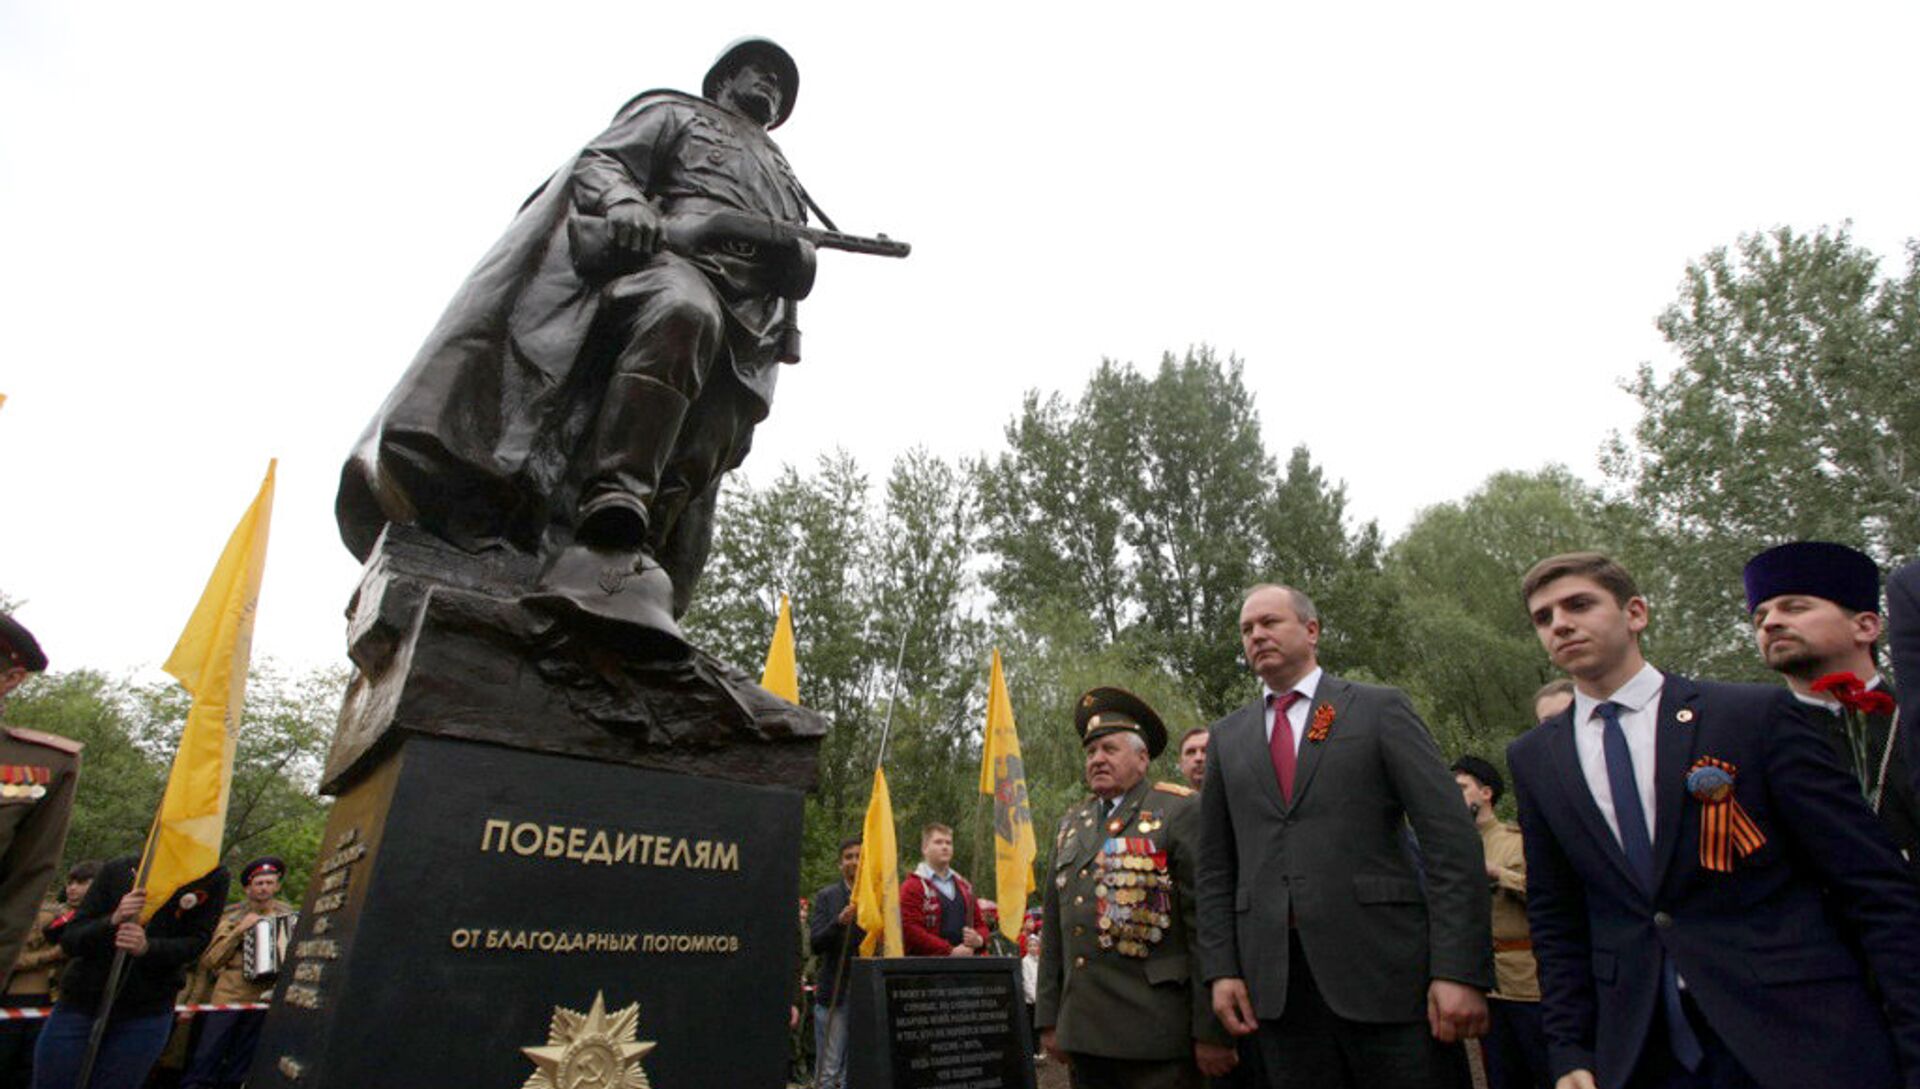 Памятник солдату Ростове на Дону